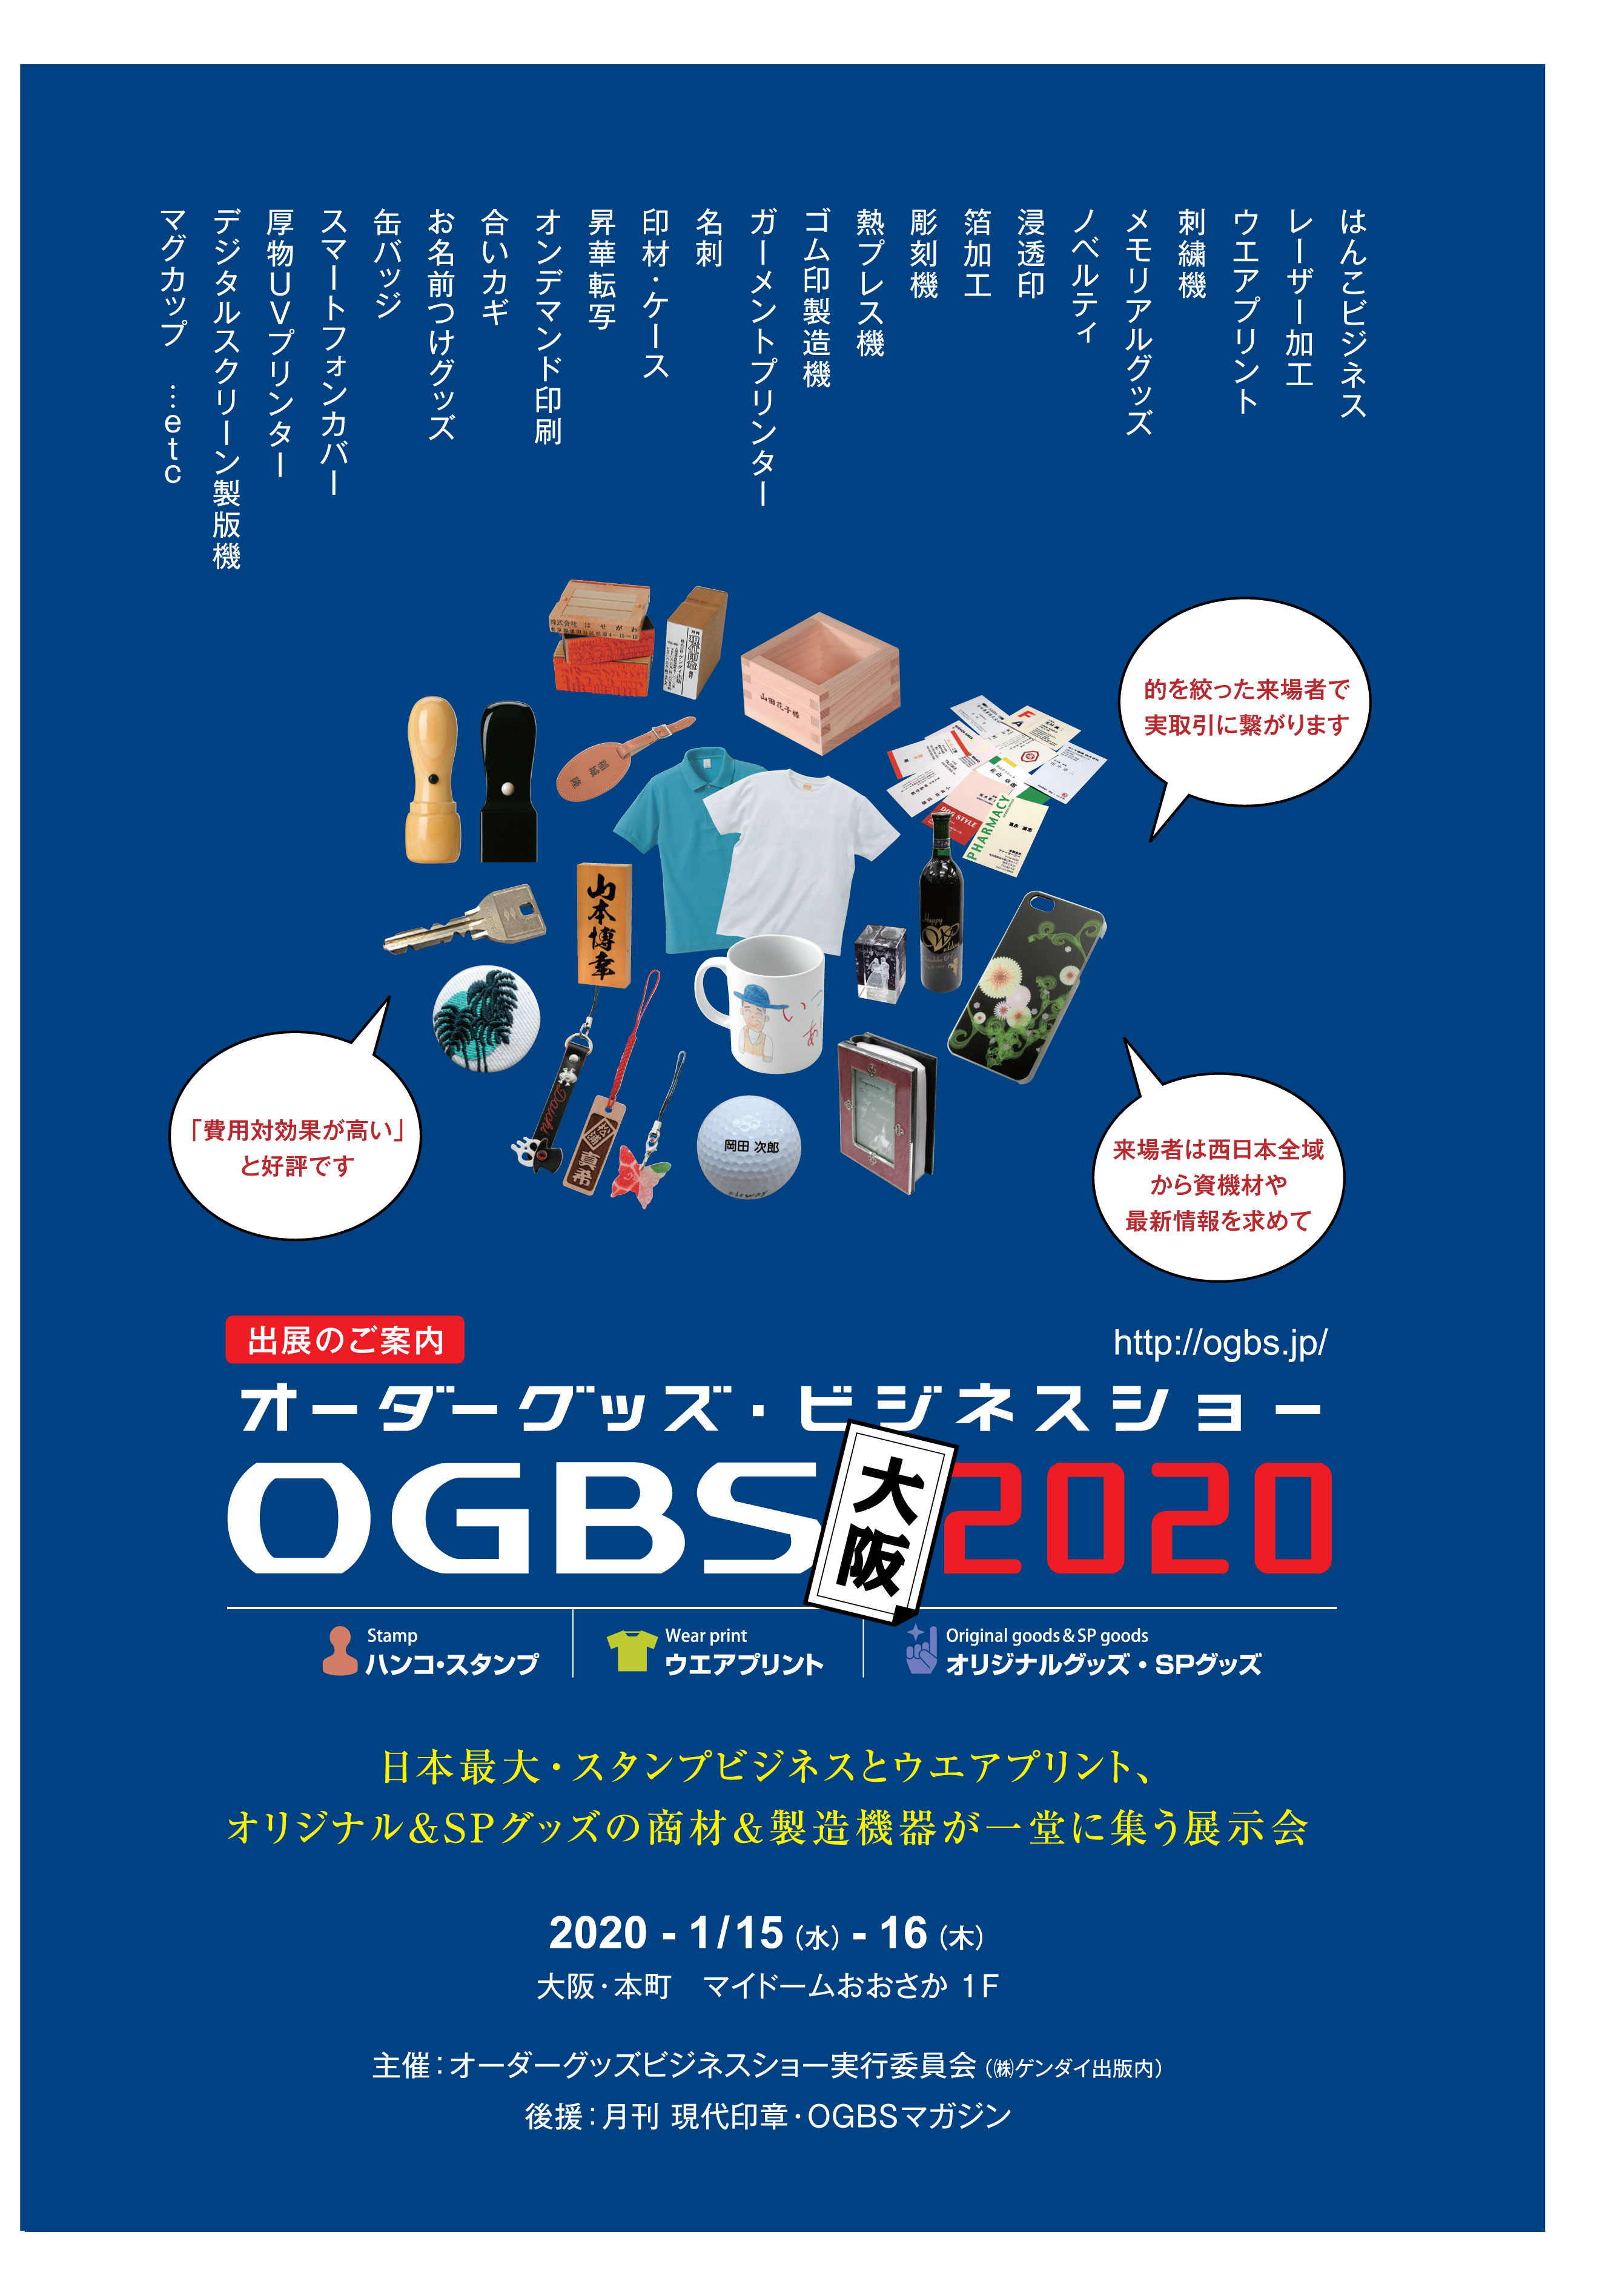 オーダーグッズ・ビジネスショー大阪2020 出展